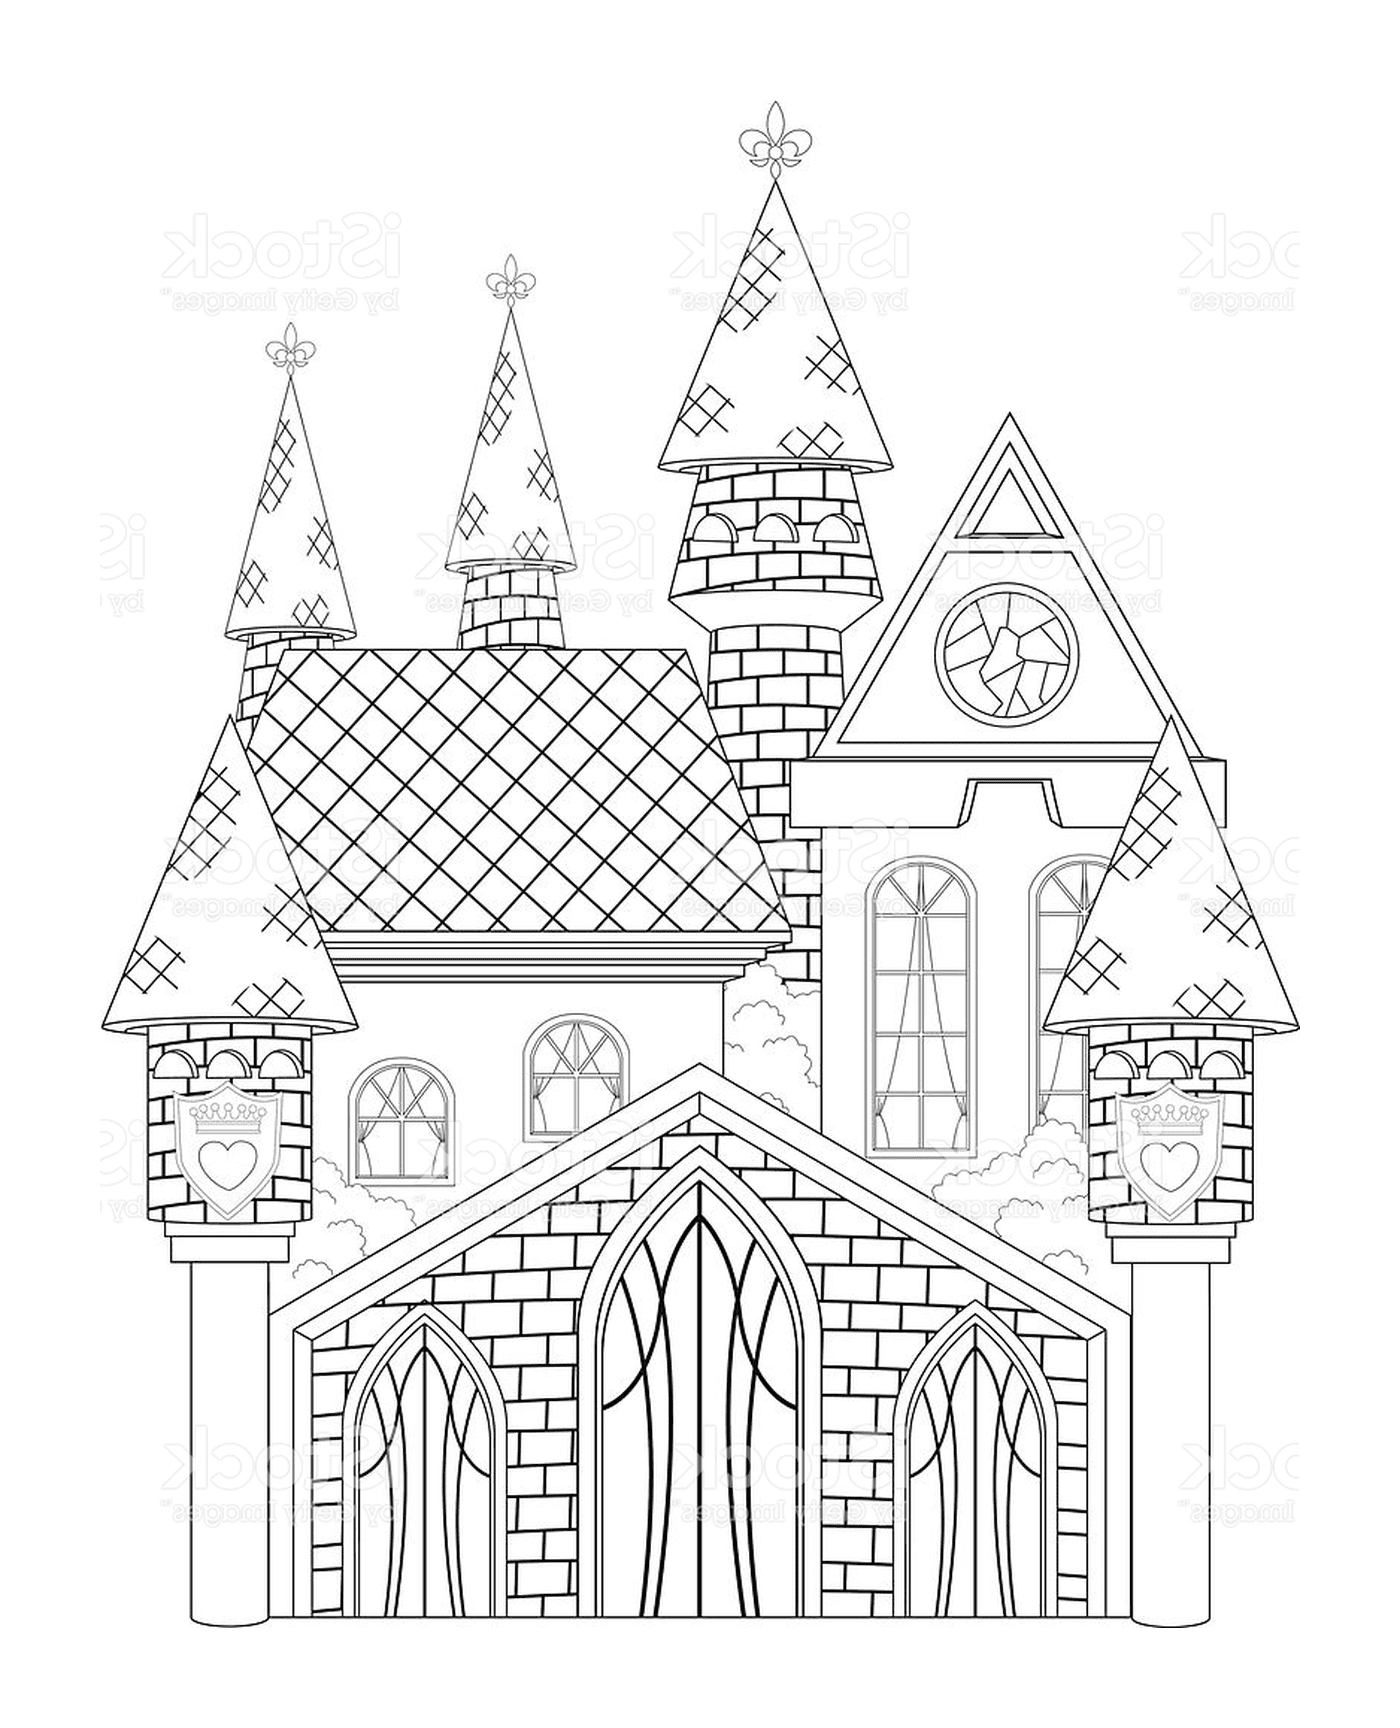  A princess castle 